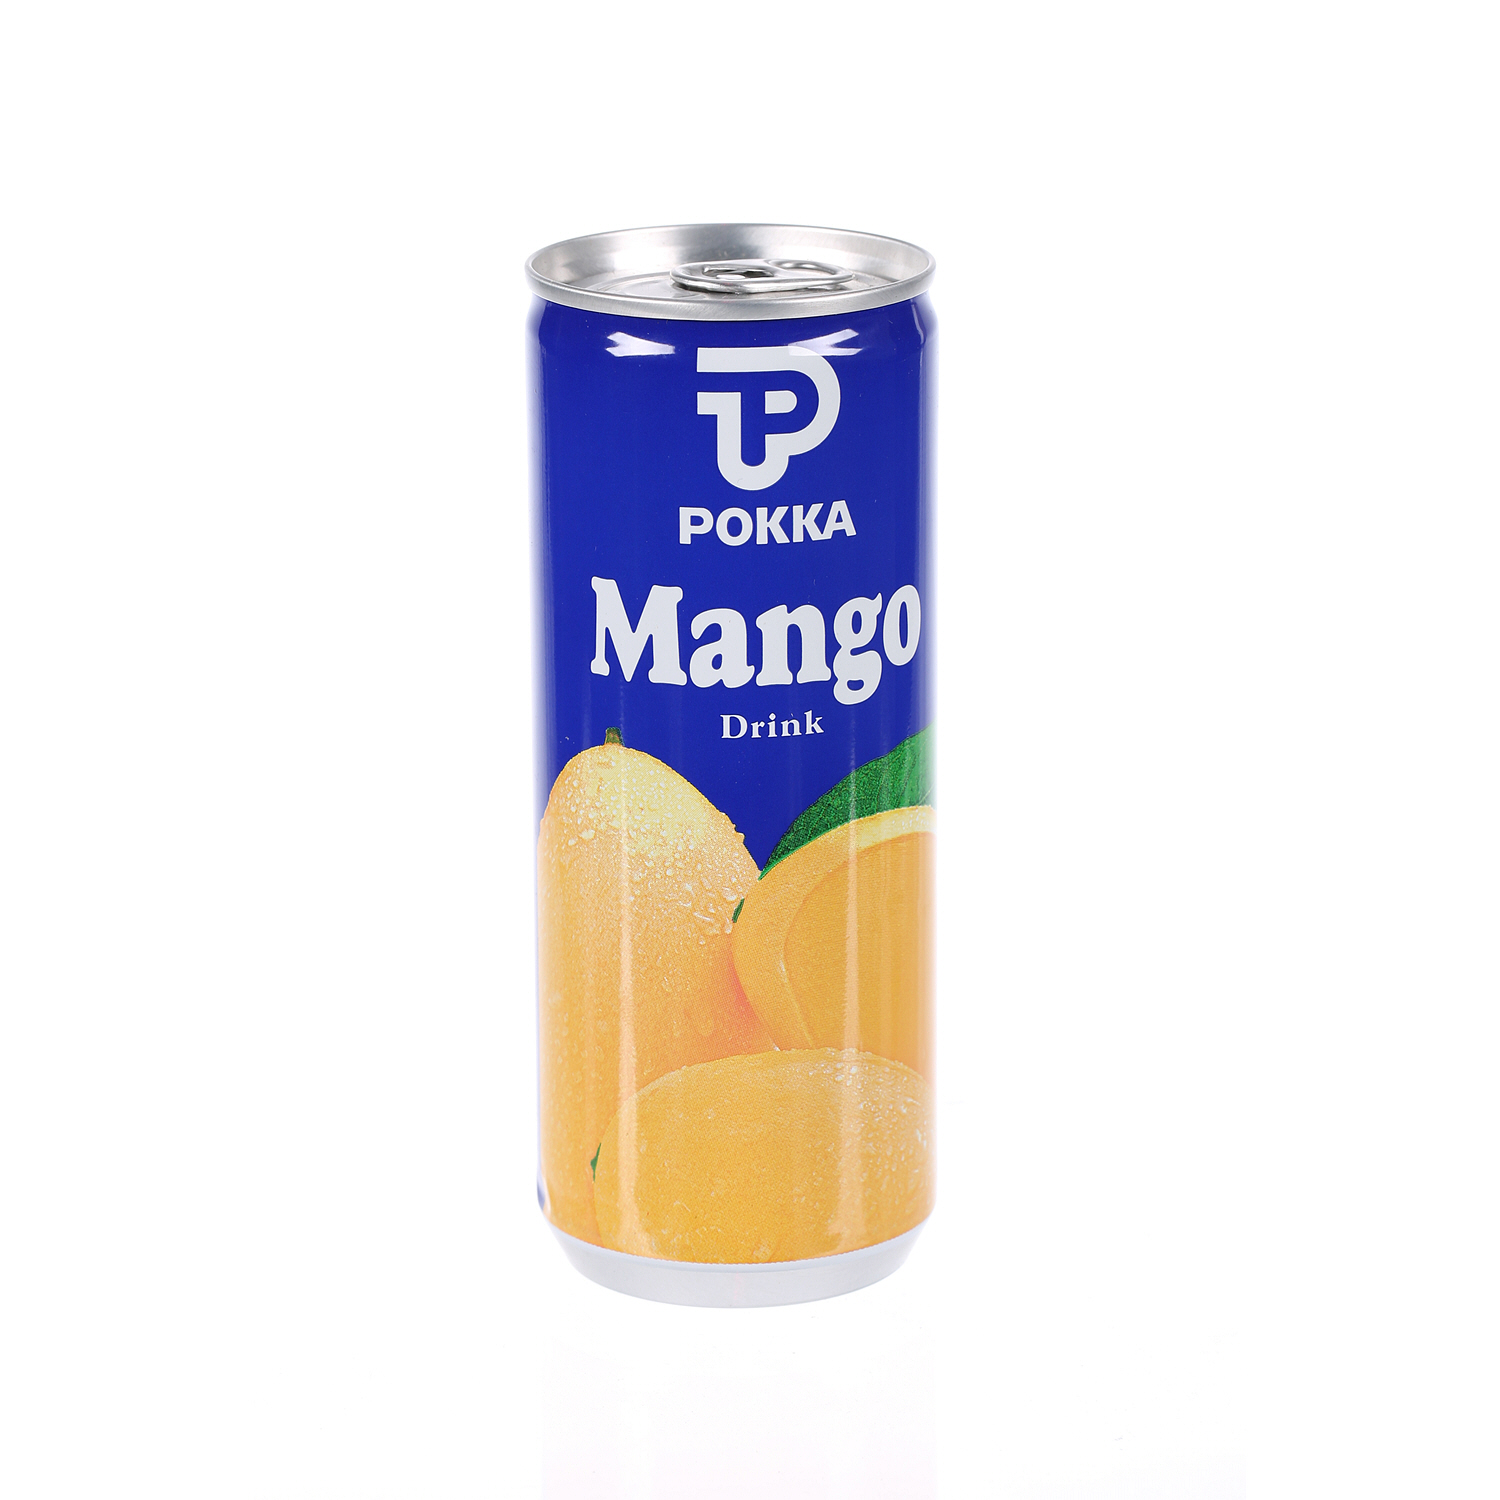 Pokka Mango Drink 240 ml